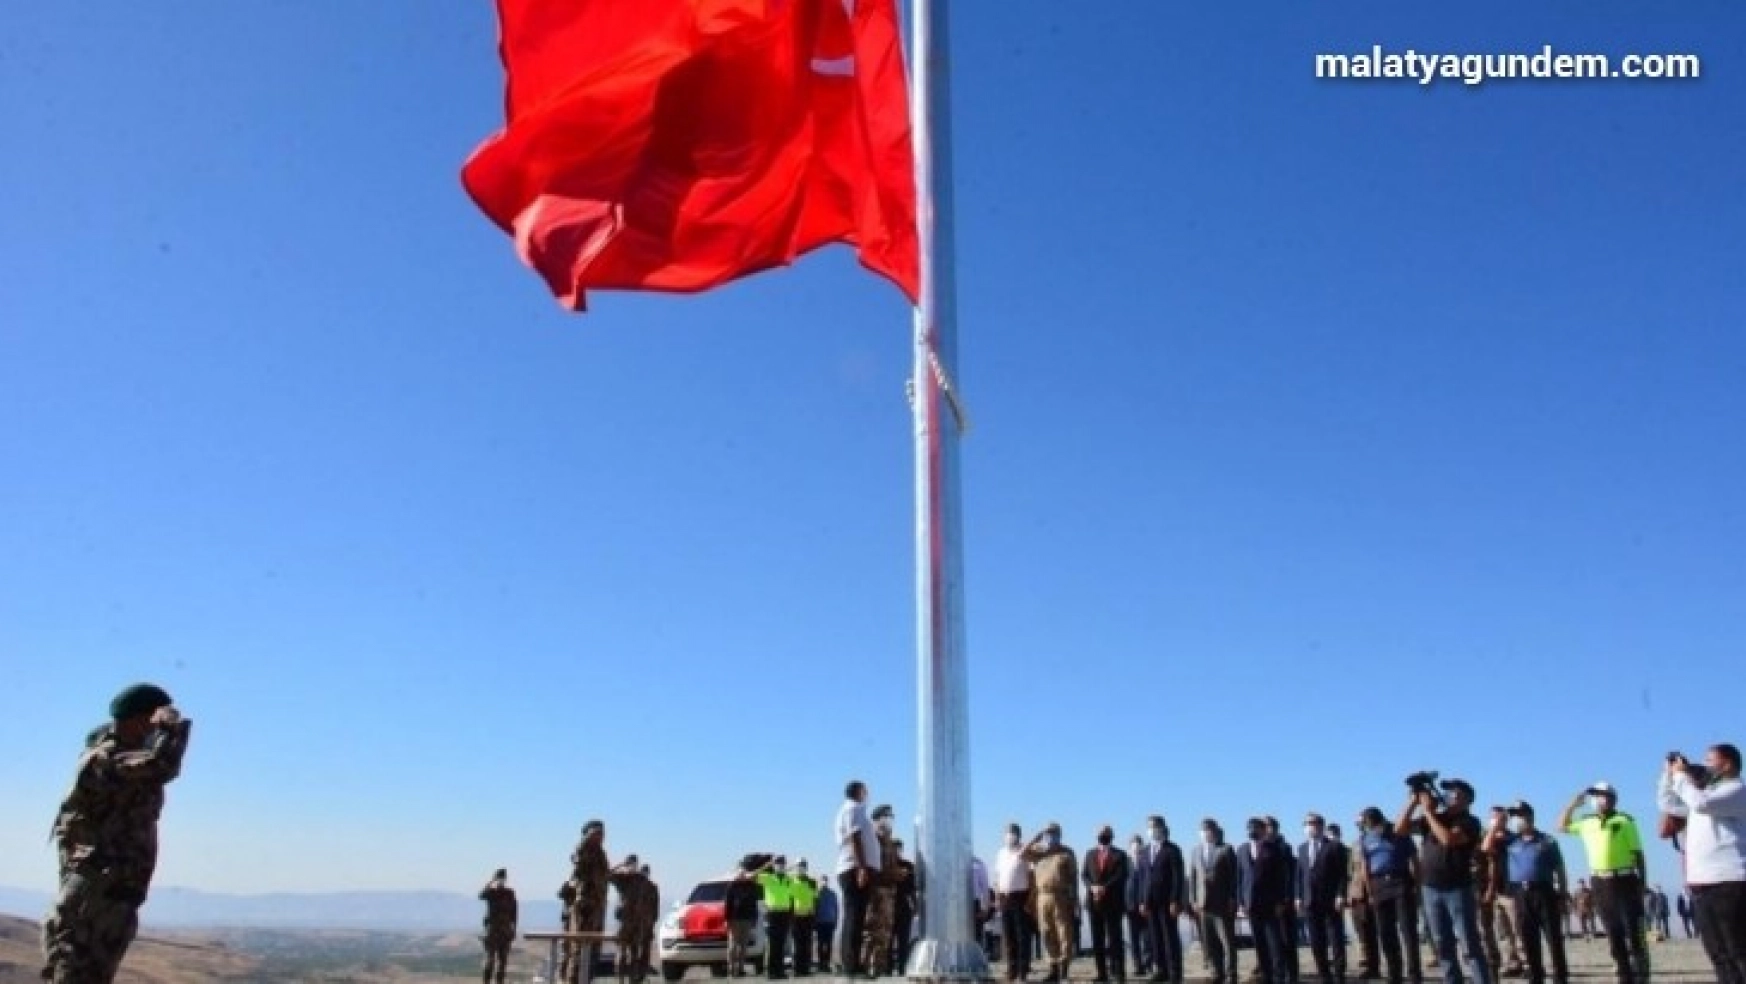 Yeni yapılacak Özel Harekat binası için dev Türk bayrağı